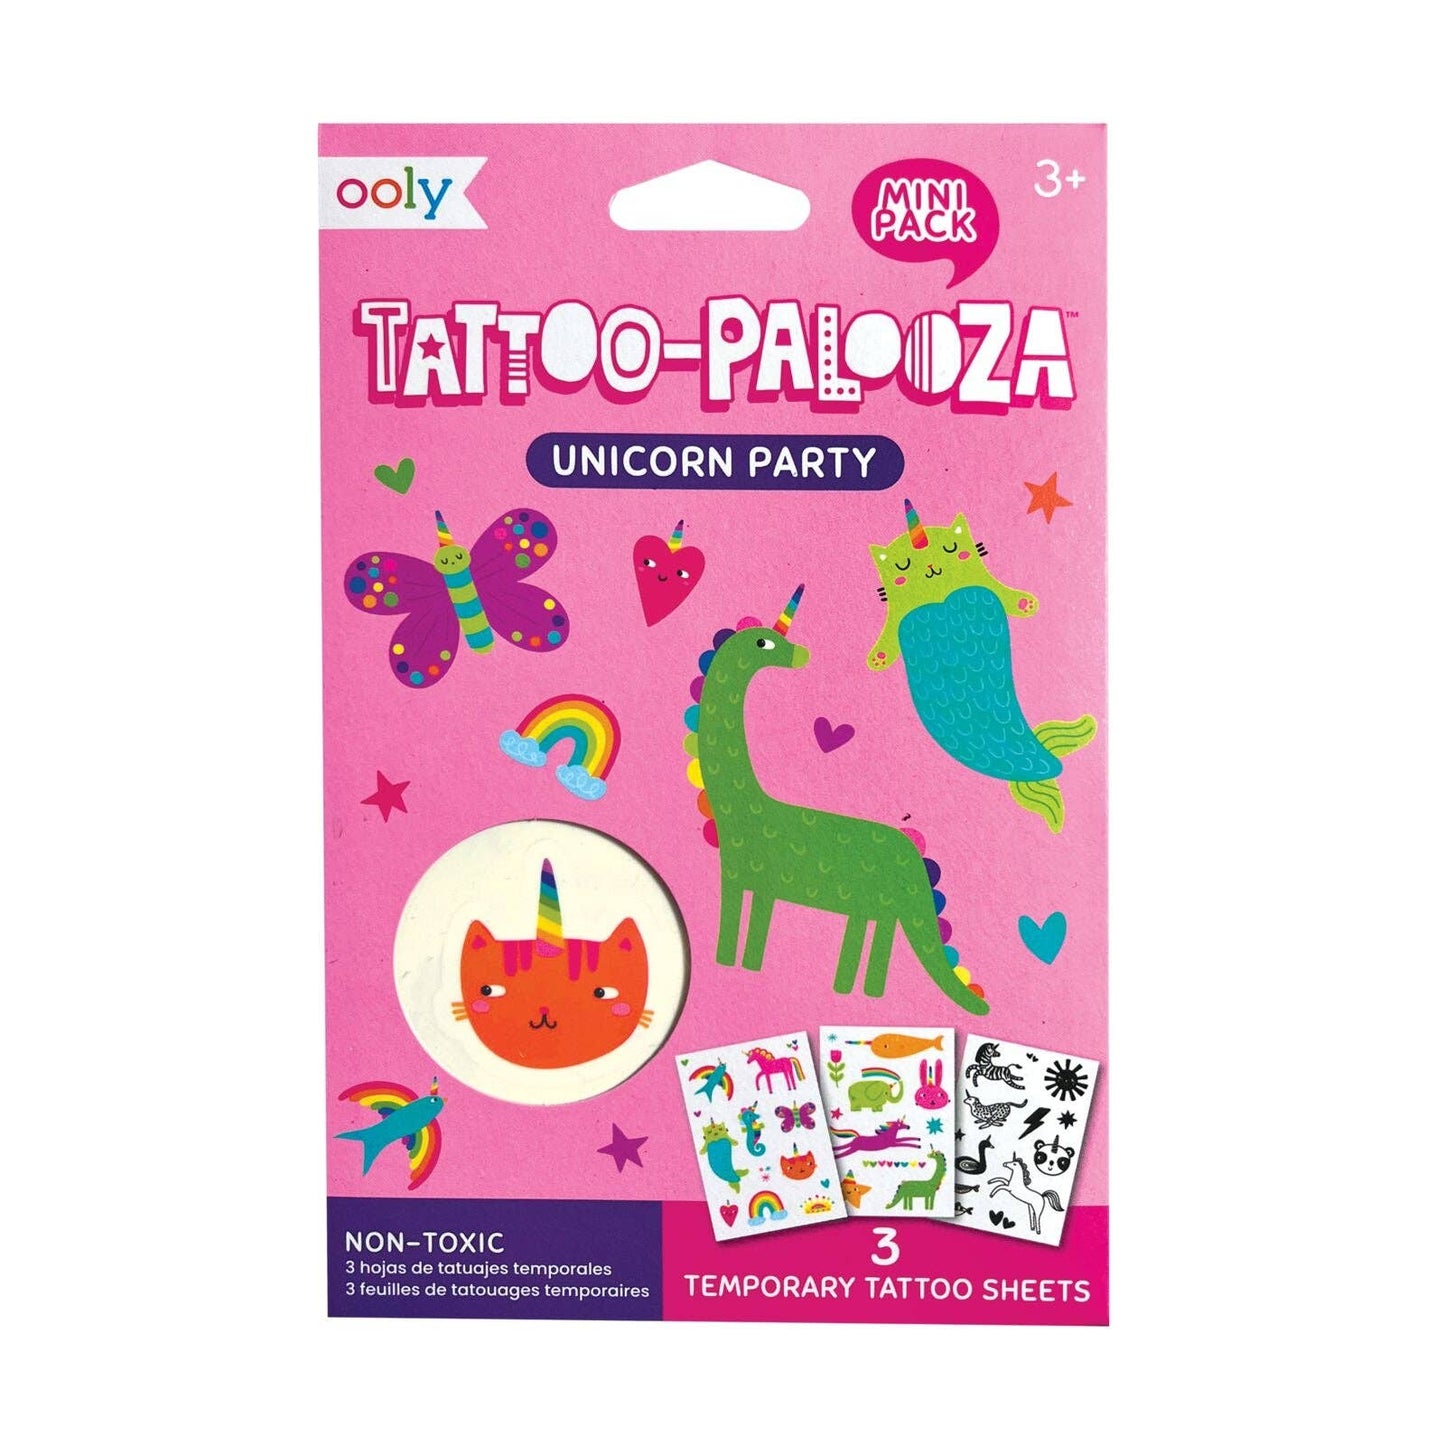 Tattoo Palooza: Unicorn Party